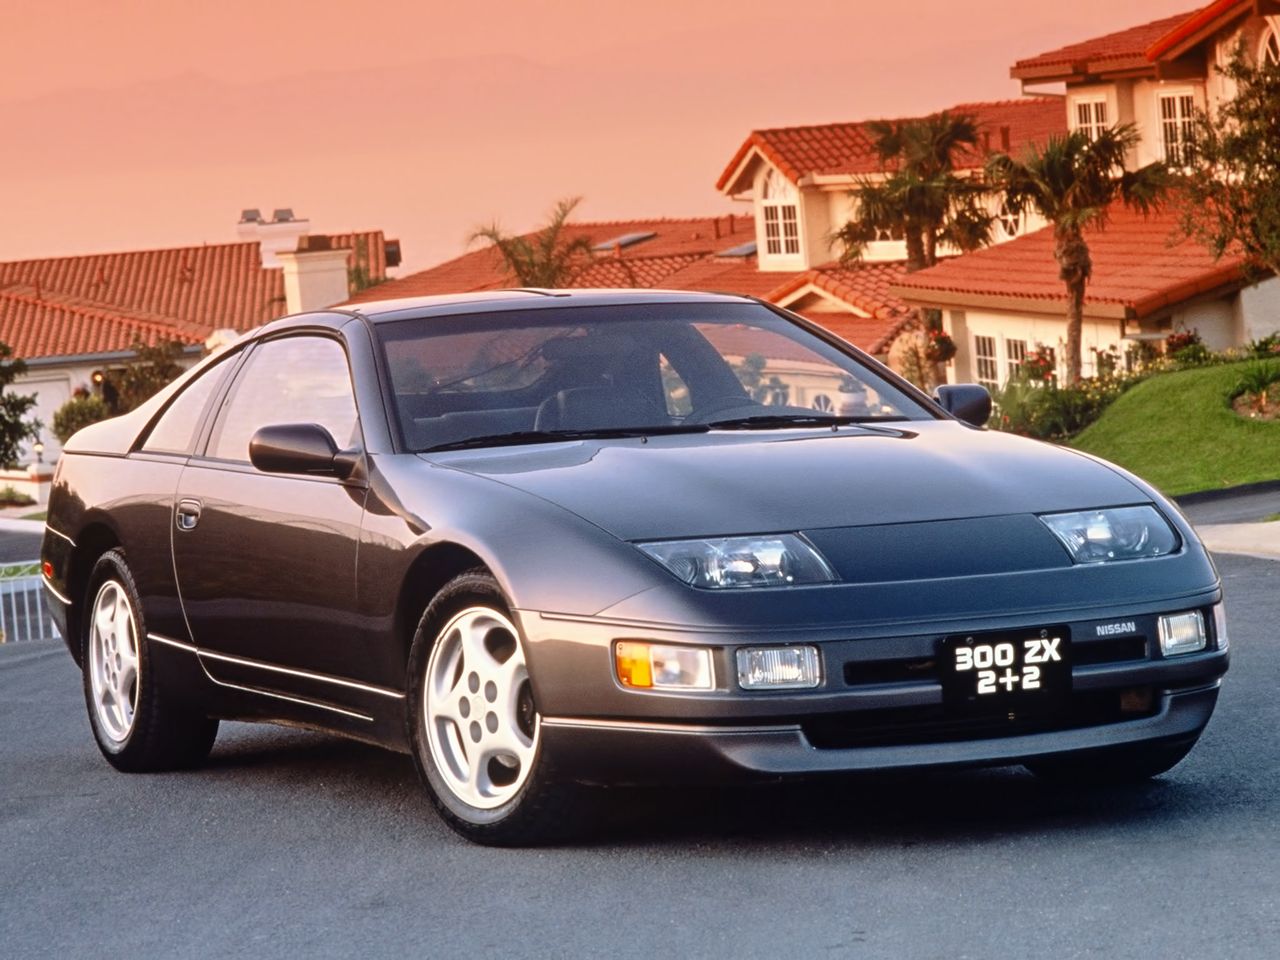 Z32 był produkowany od 1989 do 1996 roku. Jest napędzany jednostką V6 o pojemności 3 litrów w wersji wolnossącej lub 2.9 w doładowanej o mocy... tradycyjnie 280 KM. Napęd przenoszony na tylną oś pozwalał się zabawić, ale w gruncie rzeczy był to samochód do szybkiego i komfortowego przemieszczania się na długich dystansach.